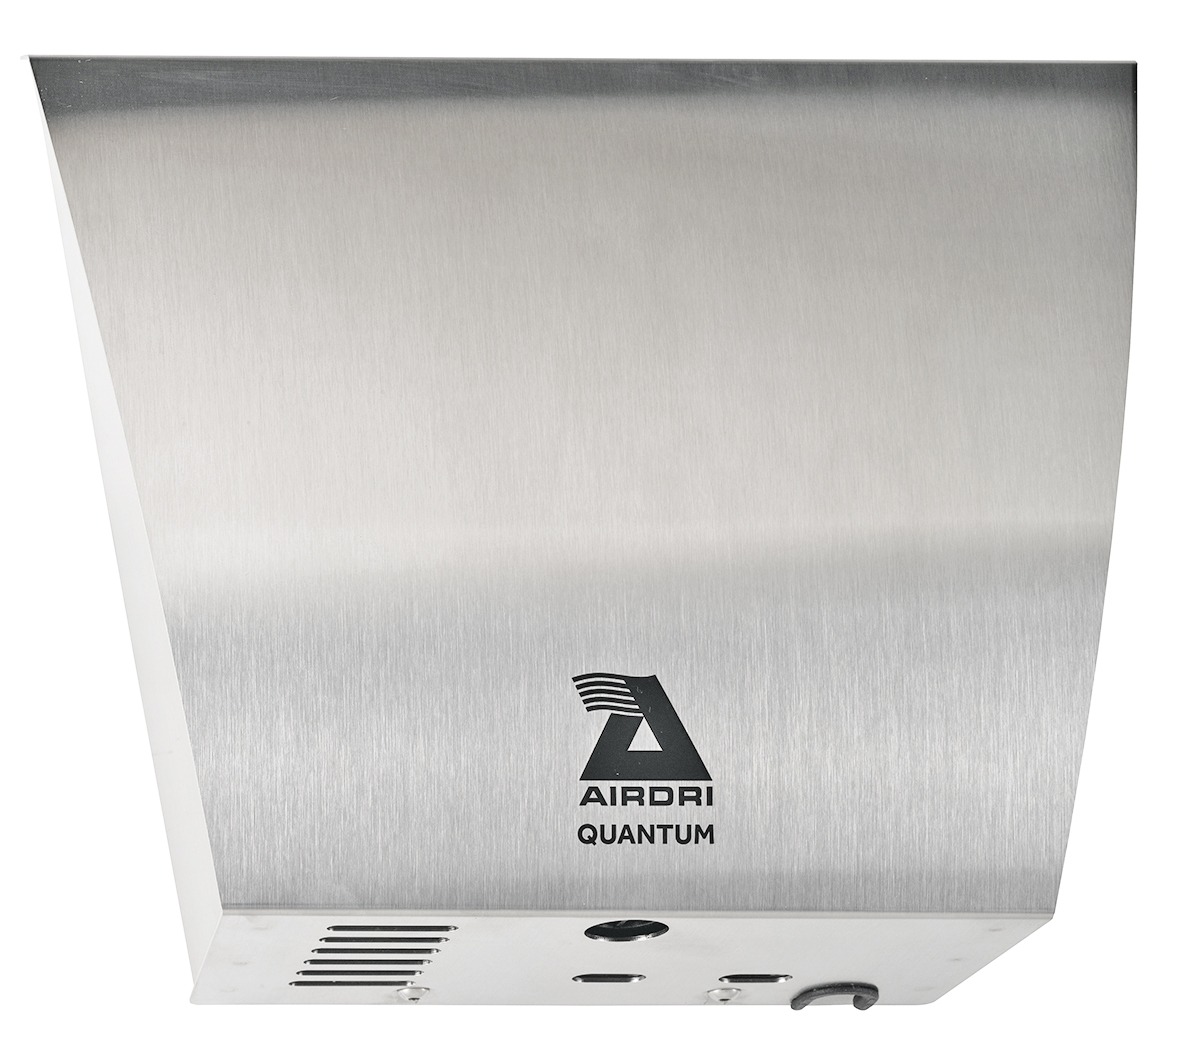 AirDri Quantum Hand Dryer